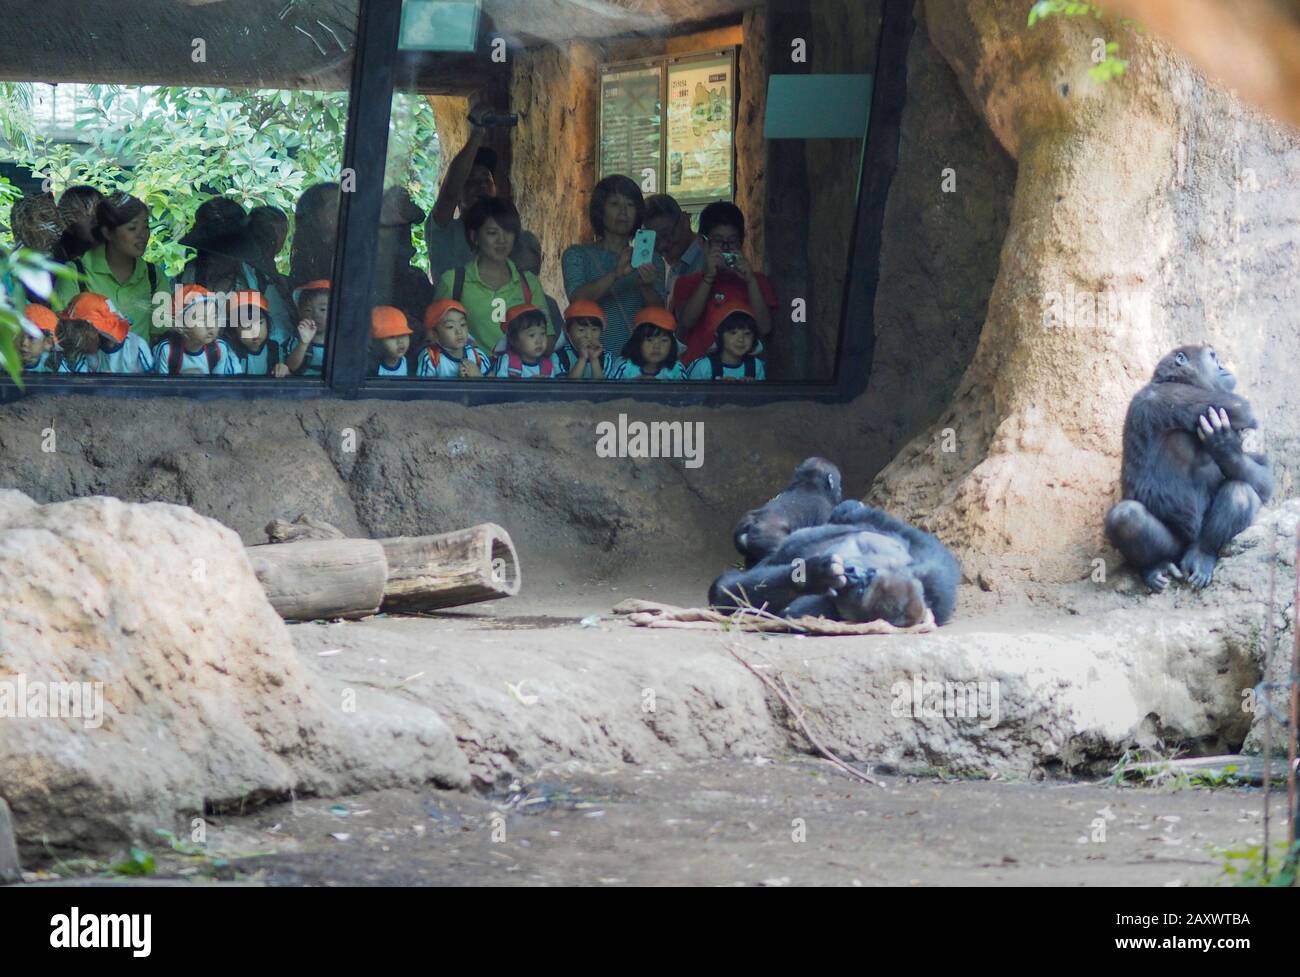 Tokyo, Giappone - 11 ottobre 2018: Durante un viaggio sul campo allo zoo di Tokyo, un gruppo di bambini giapponesi sta guardando uno scimpanzé nel loro complesso. Foto Stock